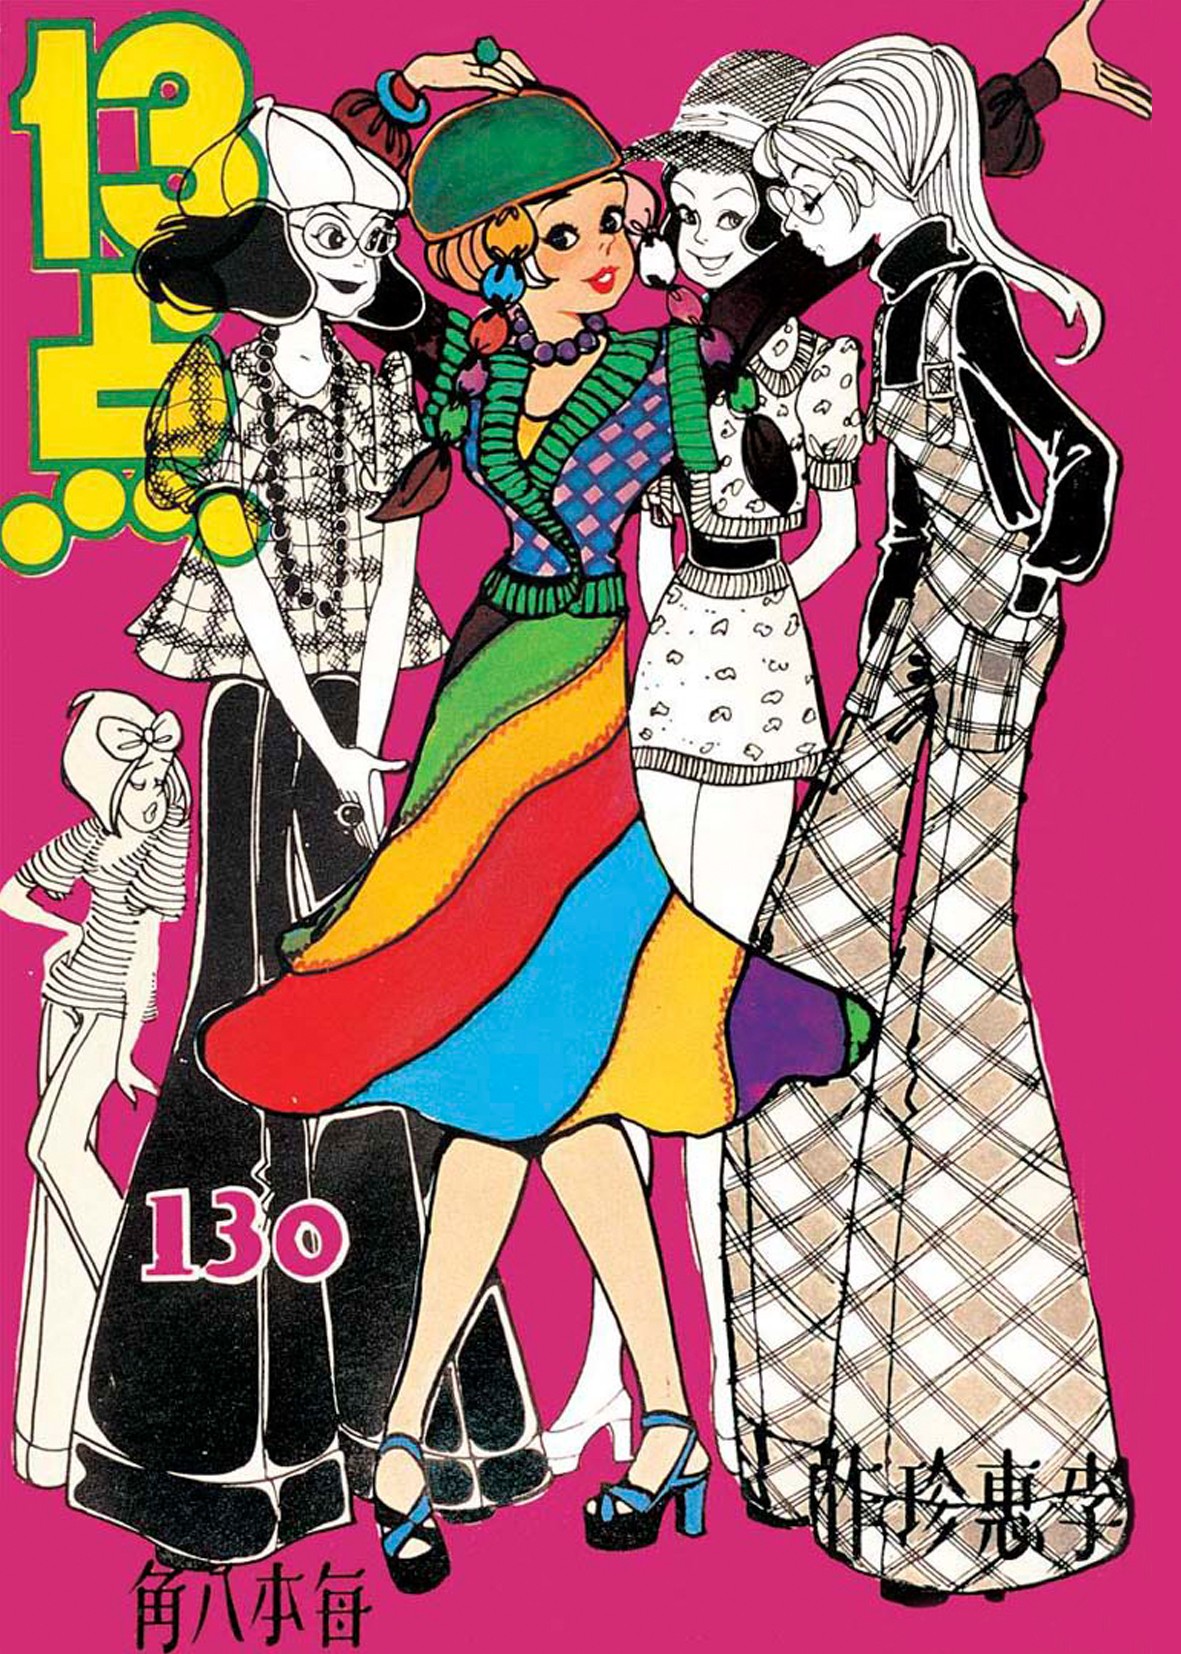 漫畫主角「13点」性格自主獨立，也追求時尚，打破當時女性社會地位低微的形象。